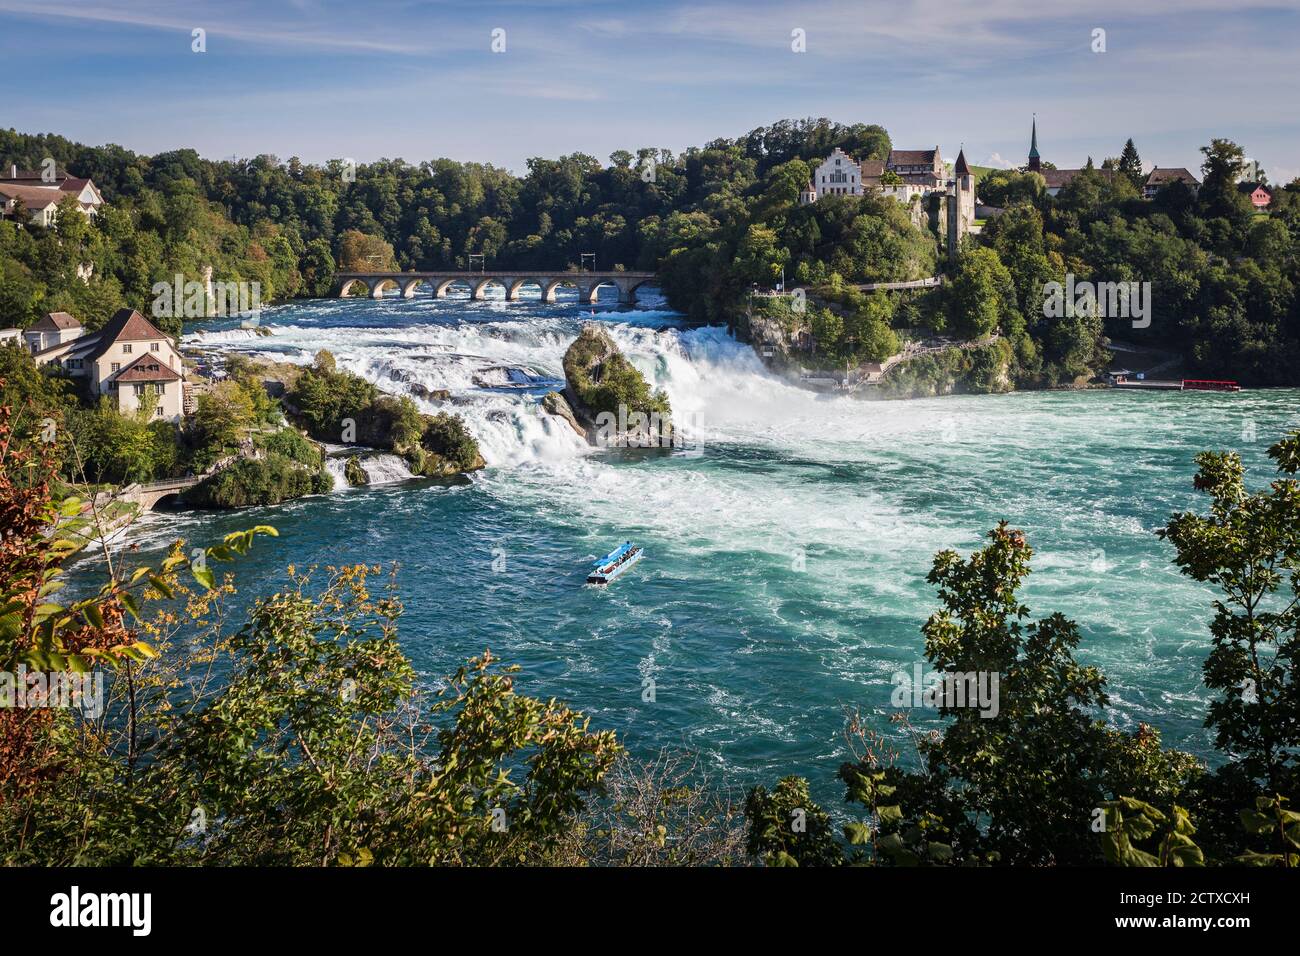 Rheinfall (Rhine Falls), Neuhausen, Switzerland Stock Photo